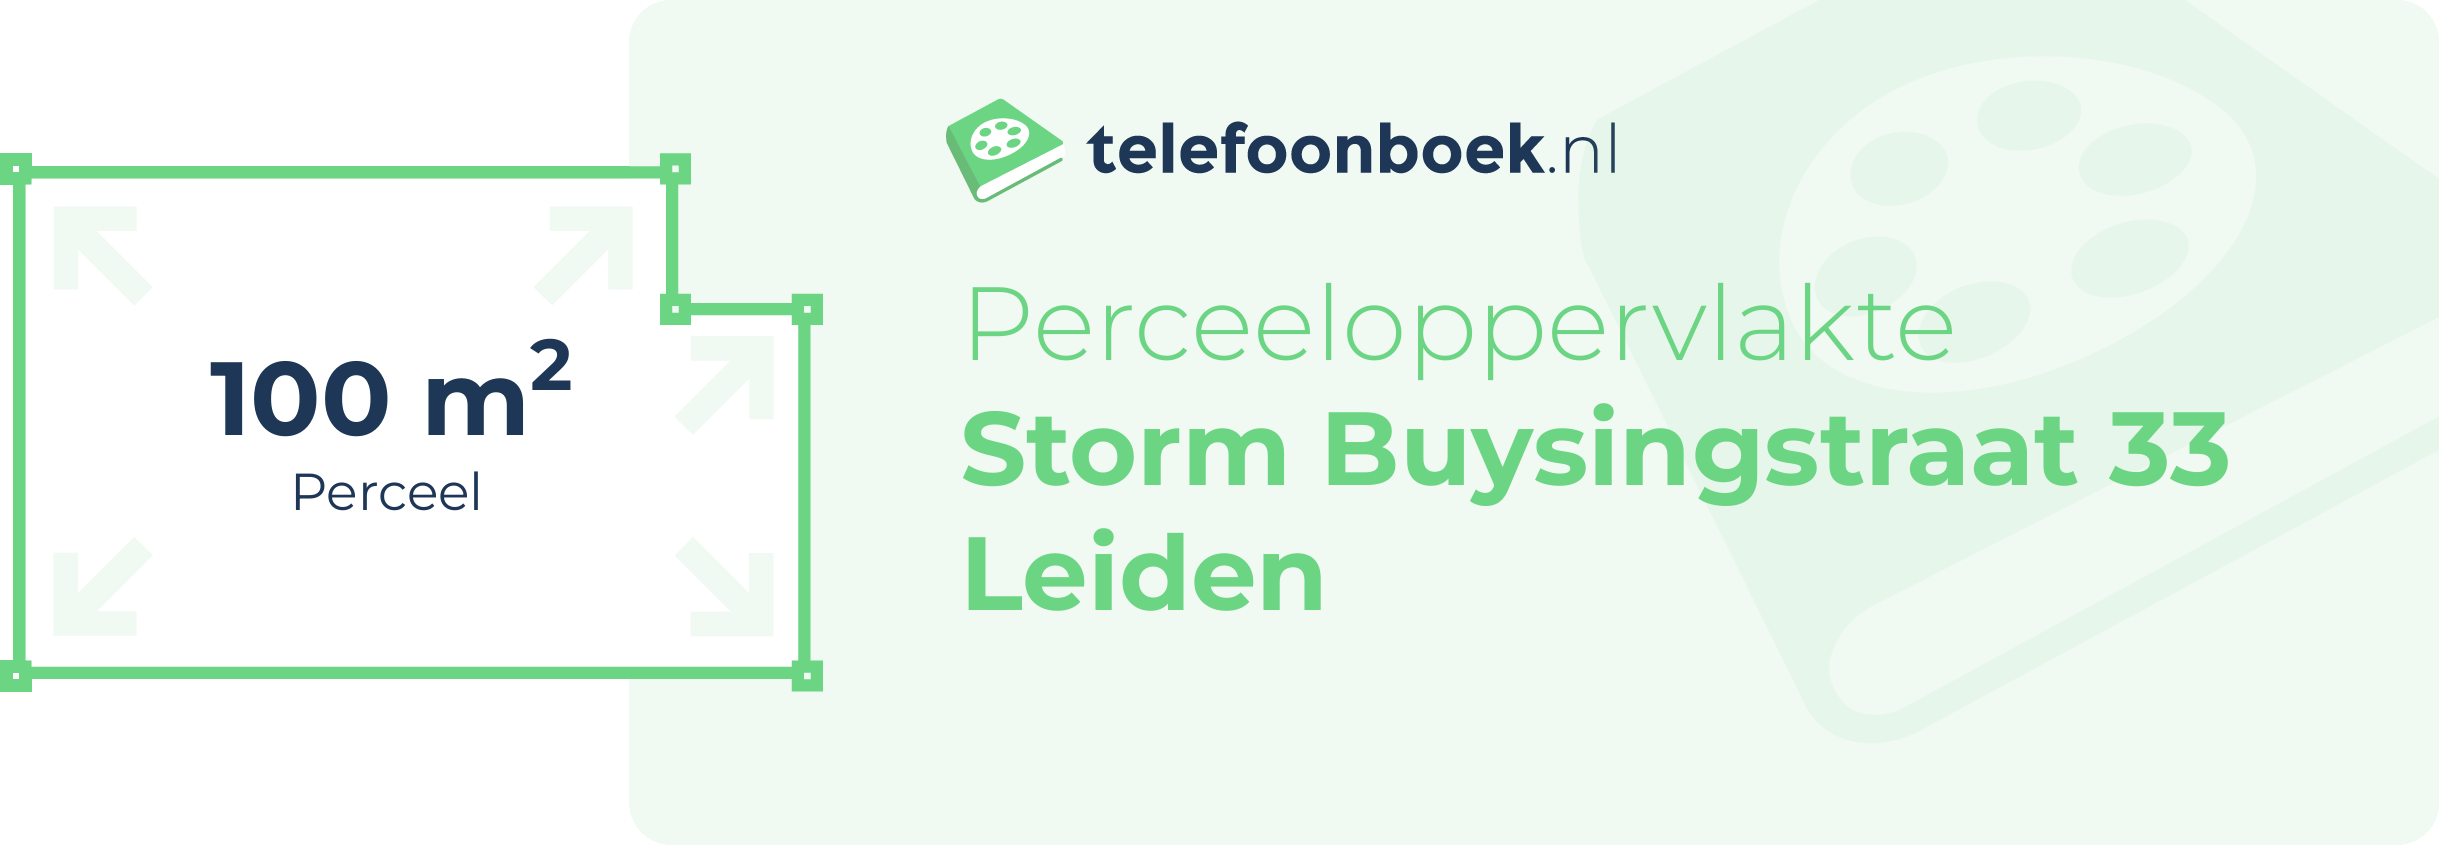 Perceeloppervlakte Storm Buysingstraat 33 Leiden